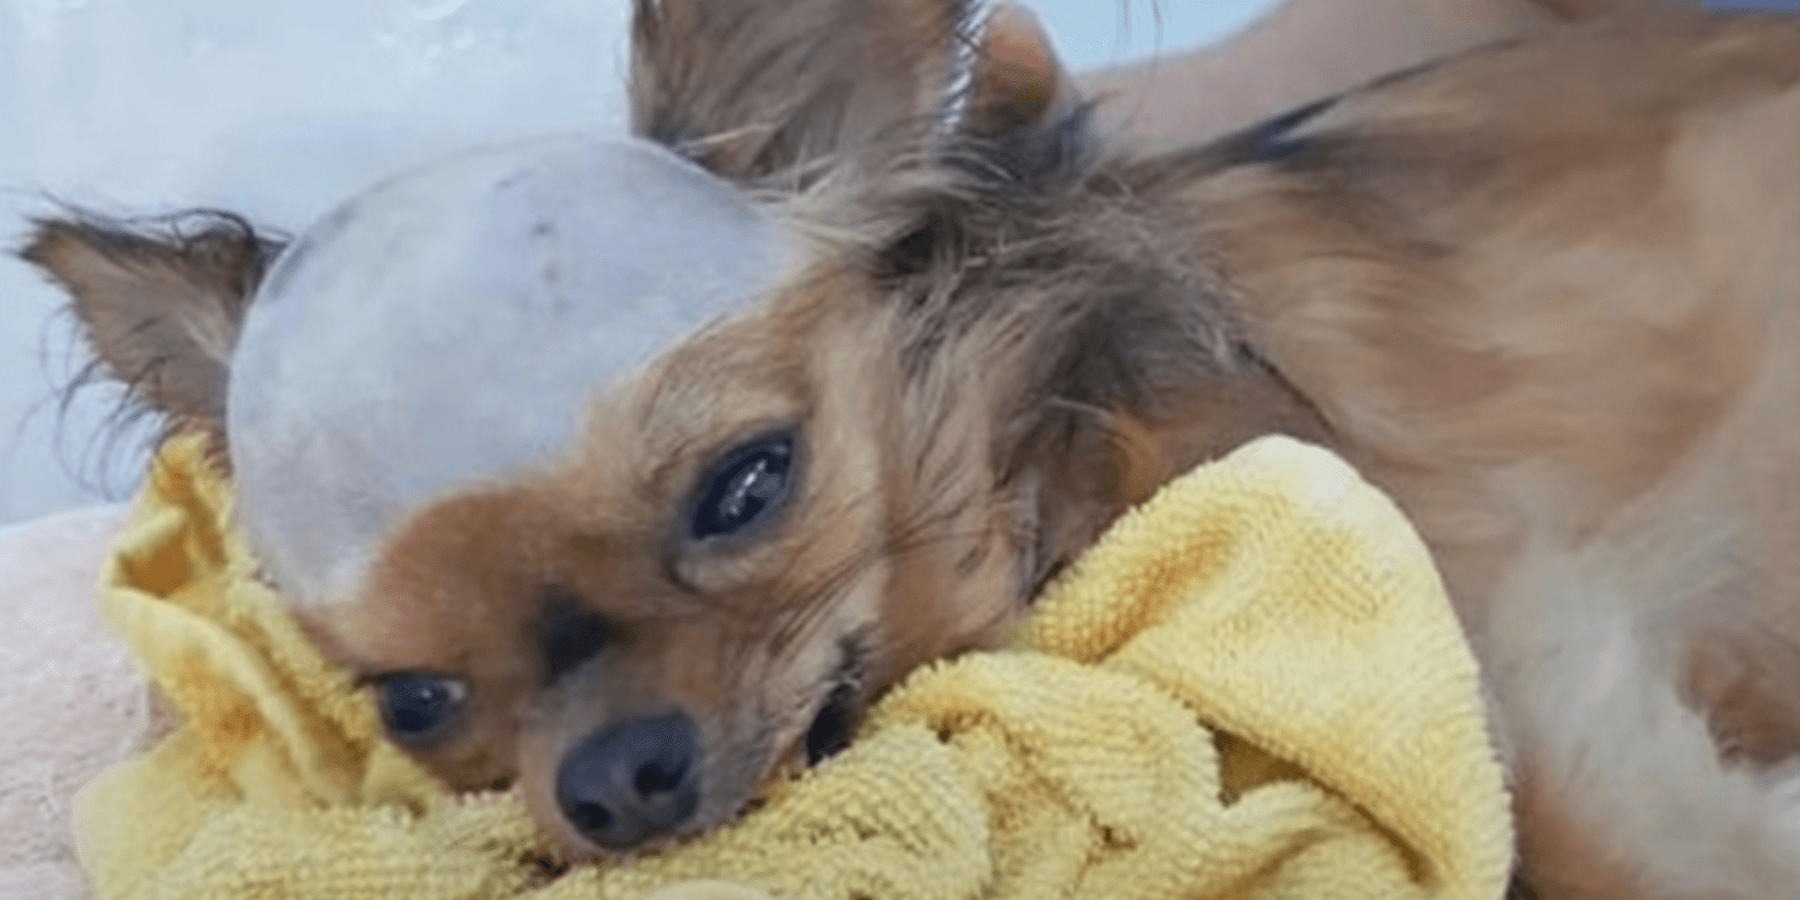 Zerschmetterter Hund mit Schlag am Kopf will weiterleben, obwohl sein Körper versagt